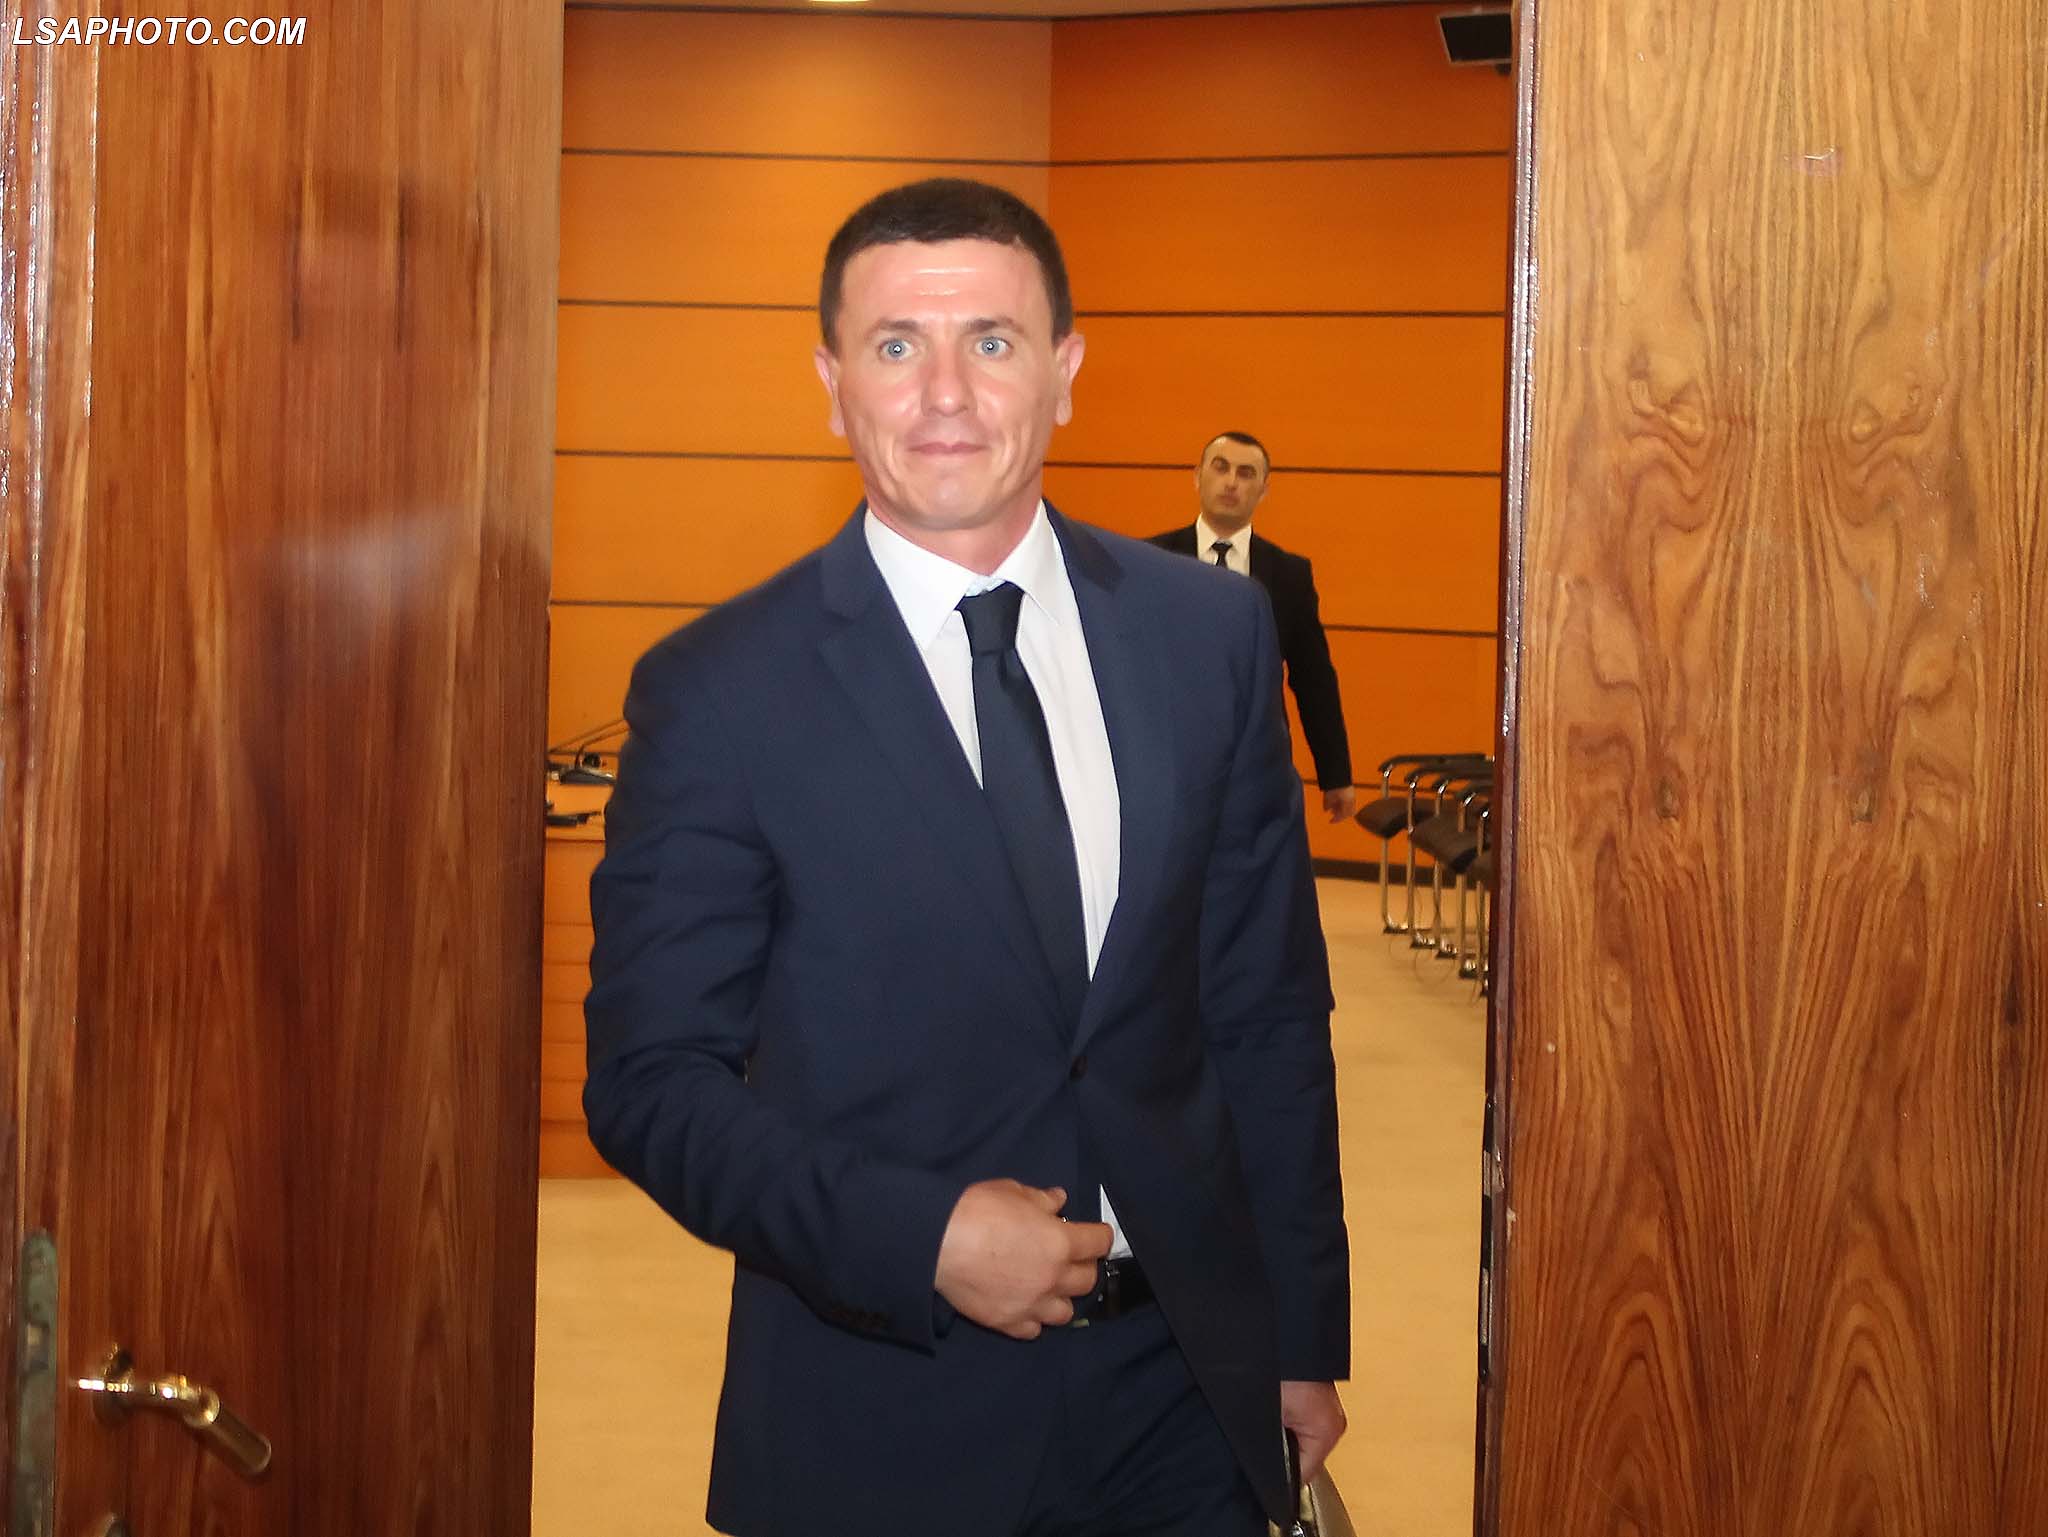 Gjyqtari i Gjykatës Administrive e Apelit, Artur Malaj duke dalë nga seanca dëgjimore e Komisionit të Pavarur te Kualifikimit, KPK, në Tiranë më 31 korrik 2018. Foto: LSA